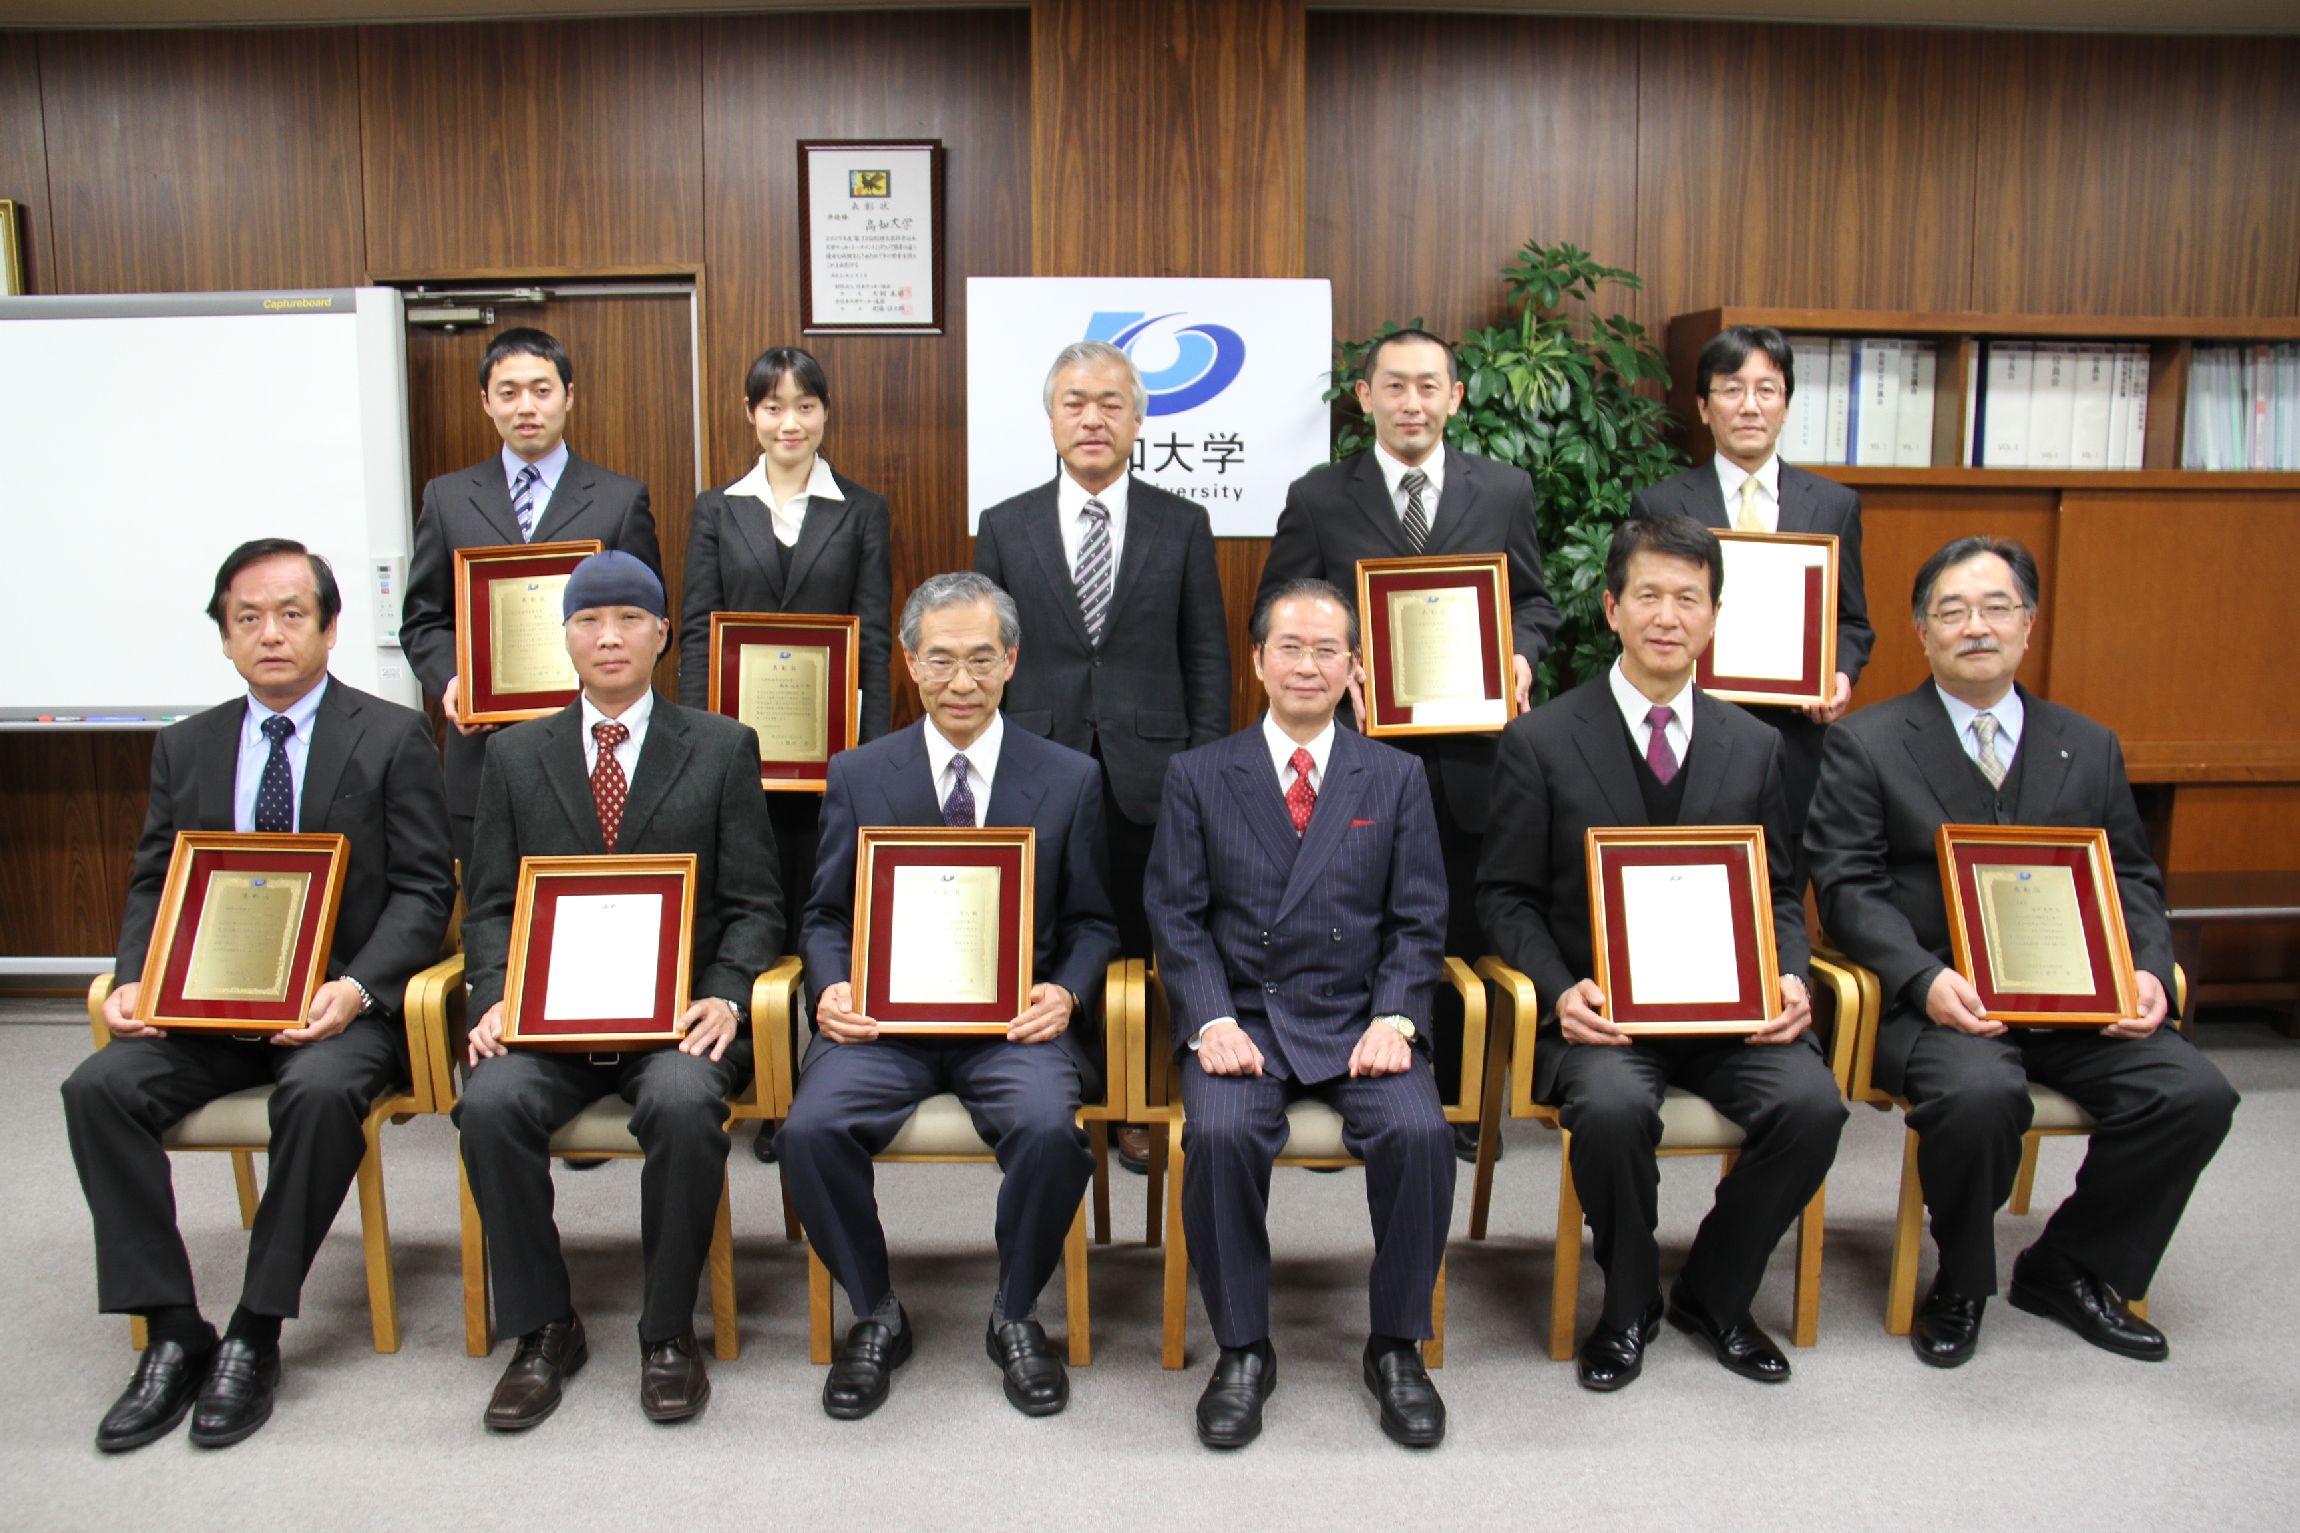 平成24年度高知大学教員顕彰制度授賞式